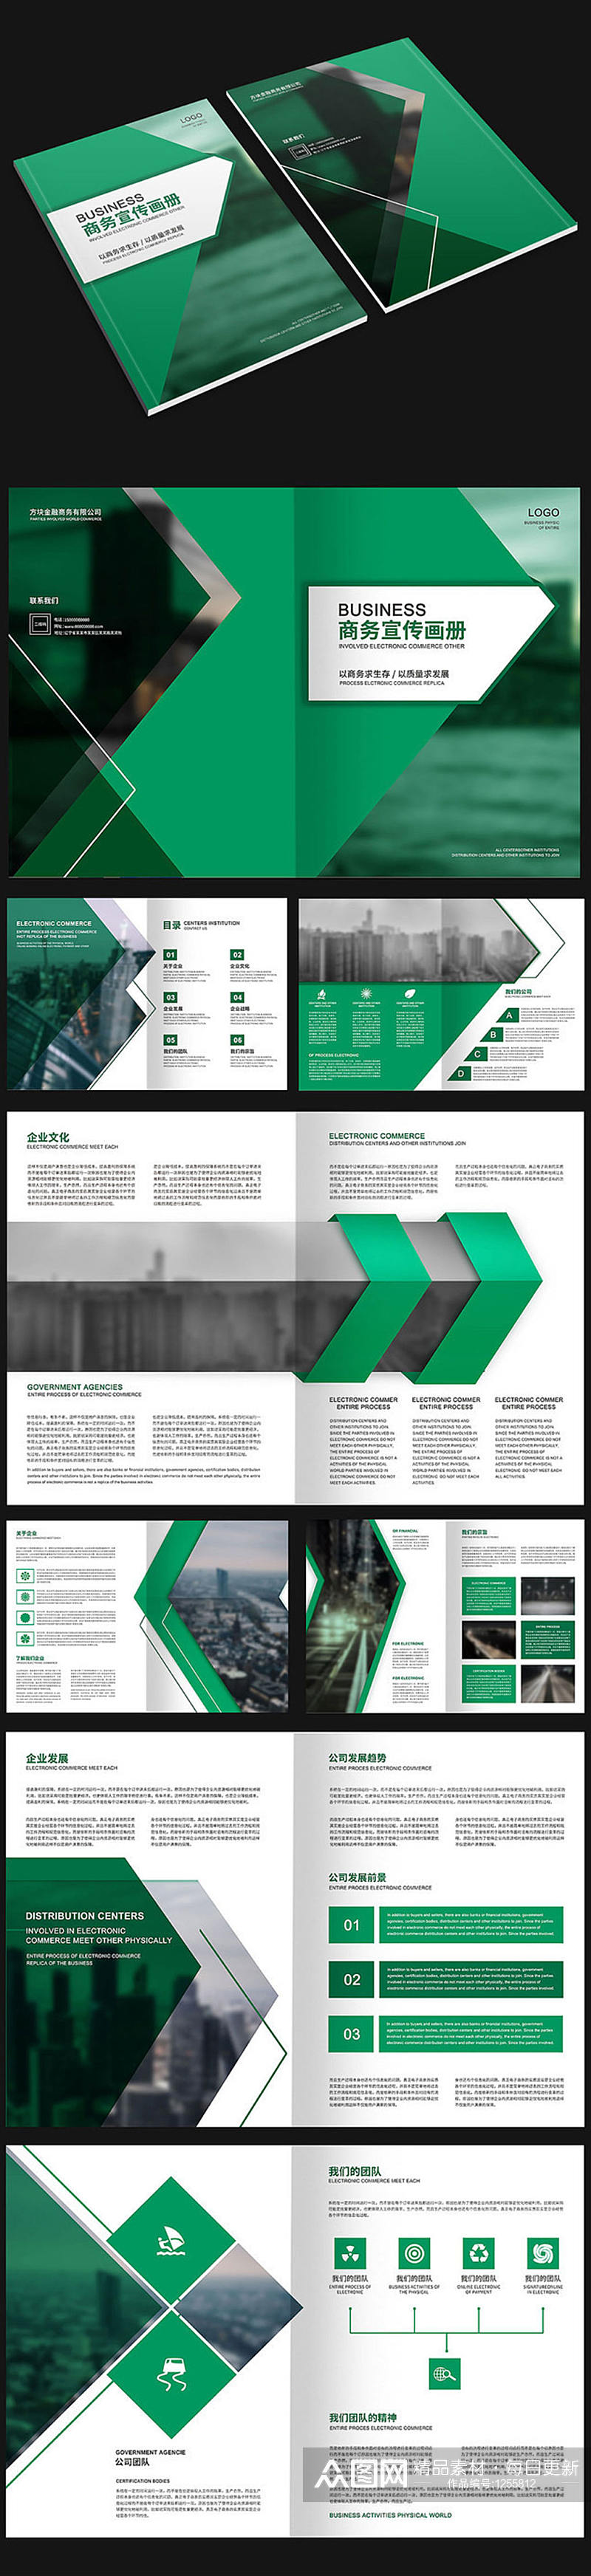 绿色几何商务宣传画册素材